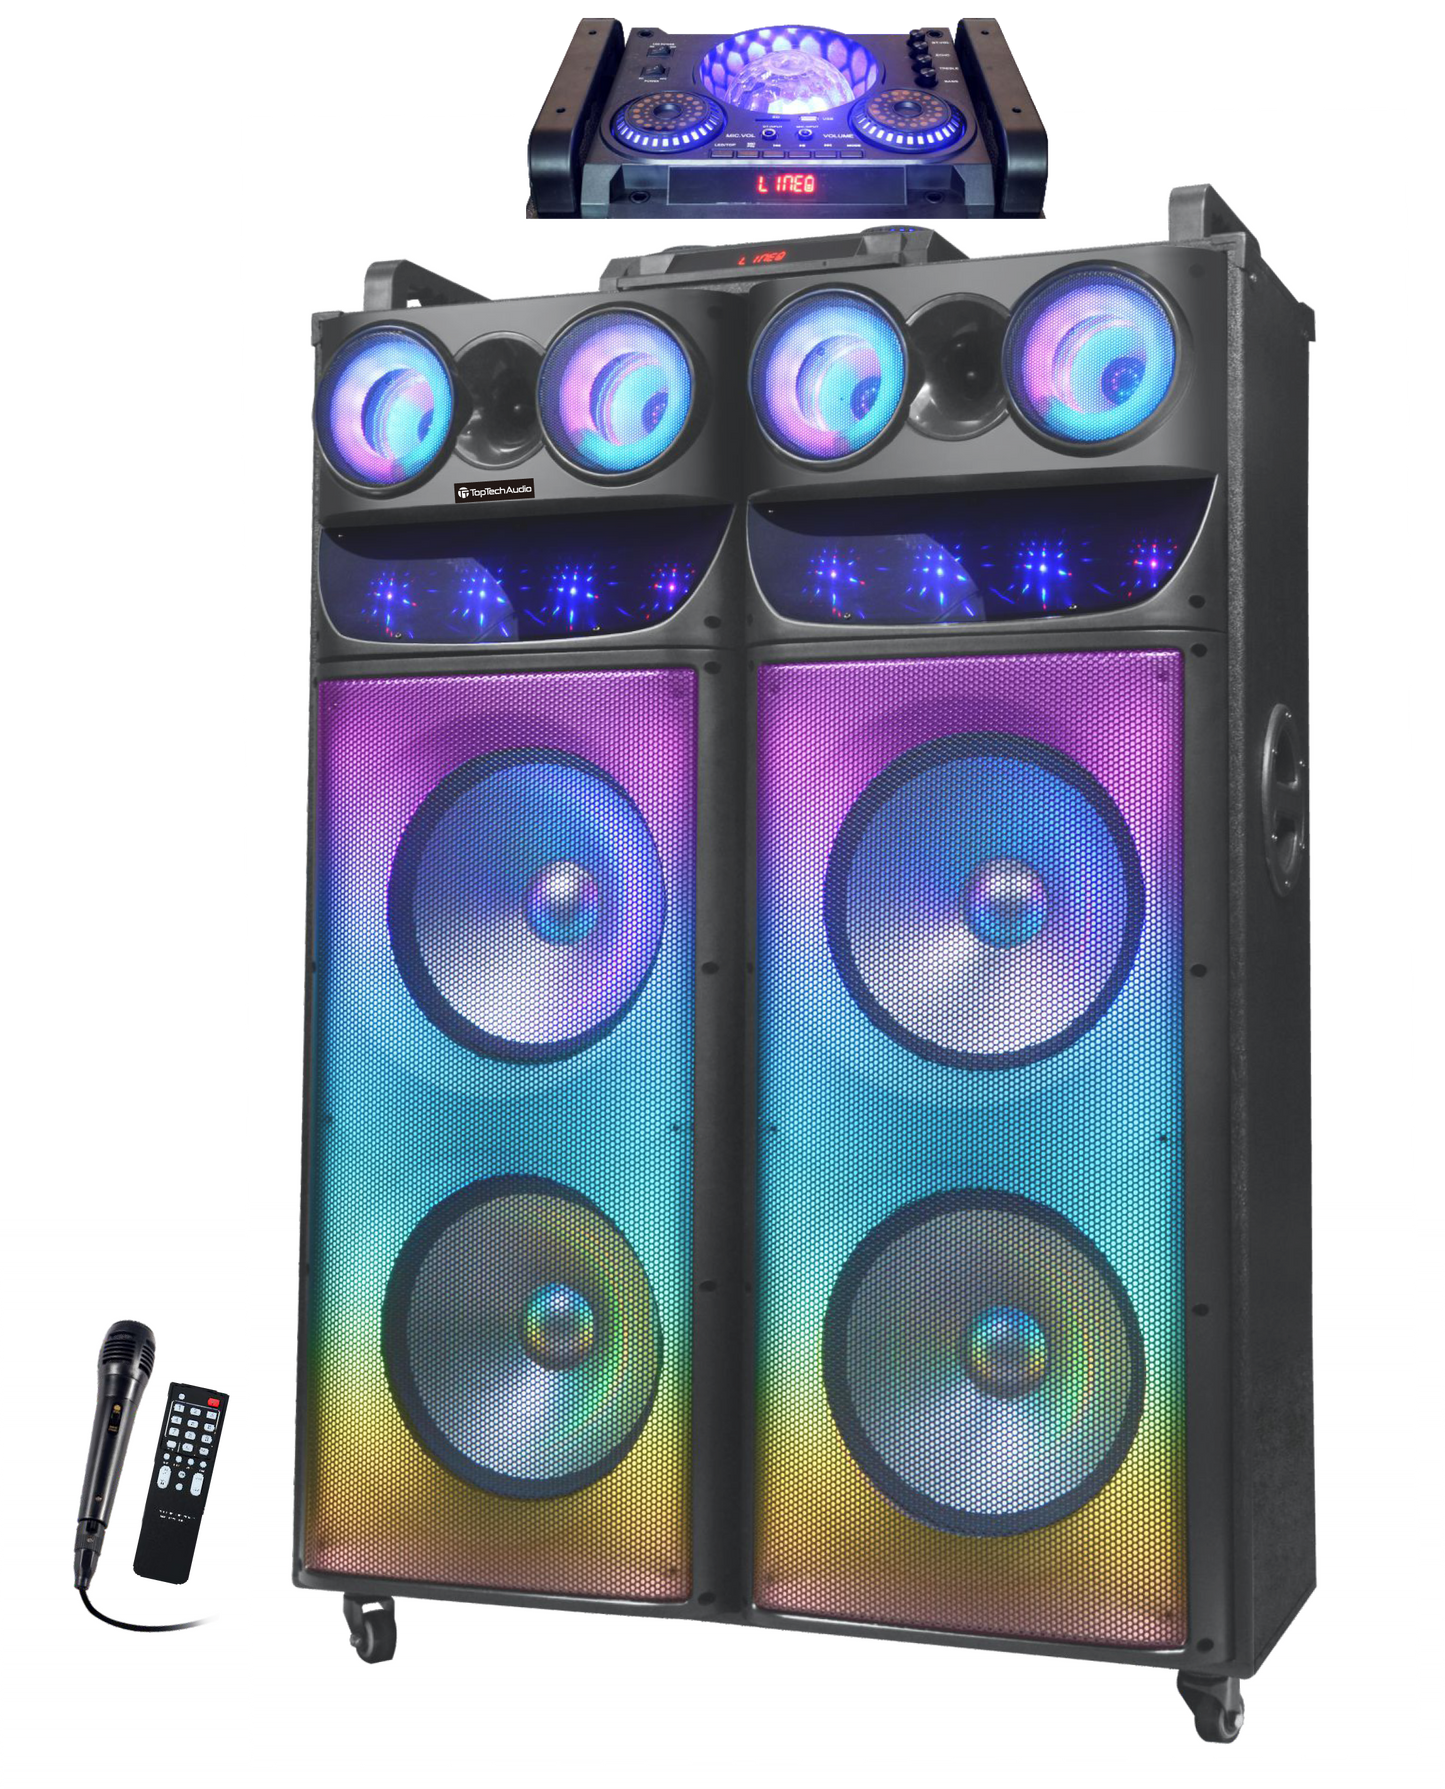 Fully Amplified Portable 20000 Watts Peak Power 4x12” Speaker